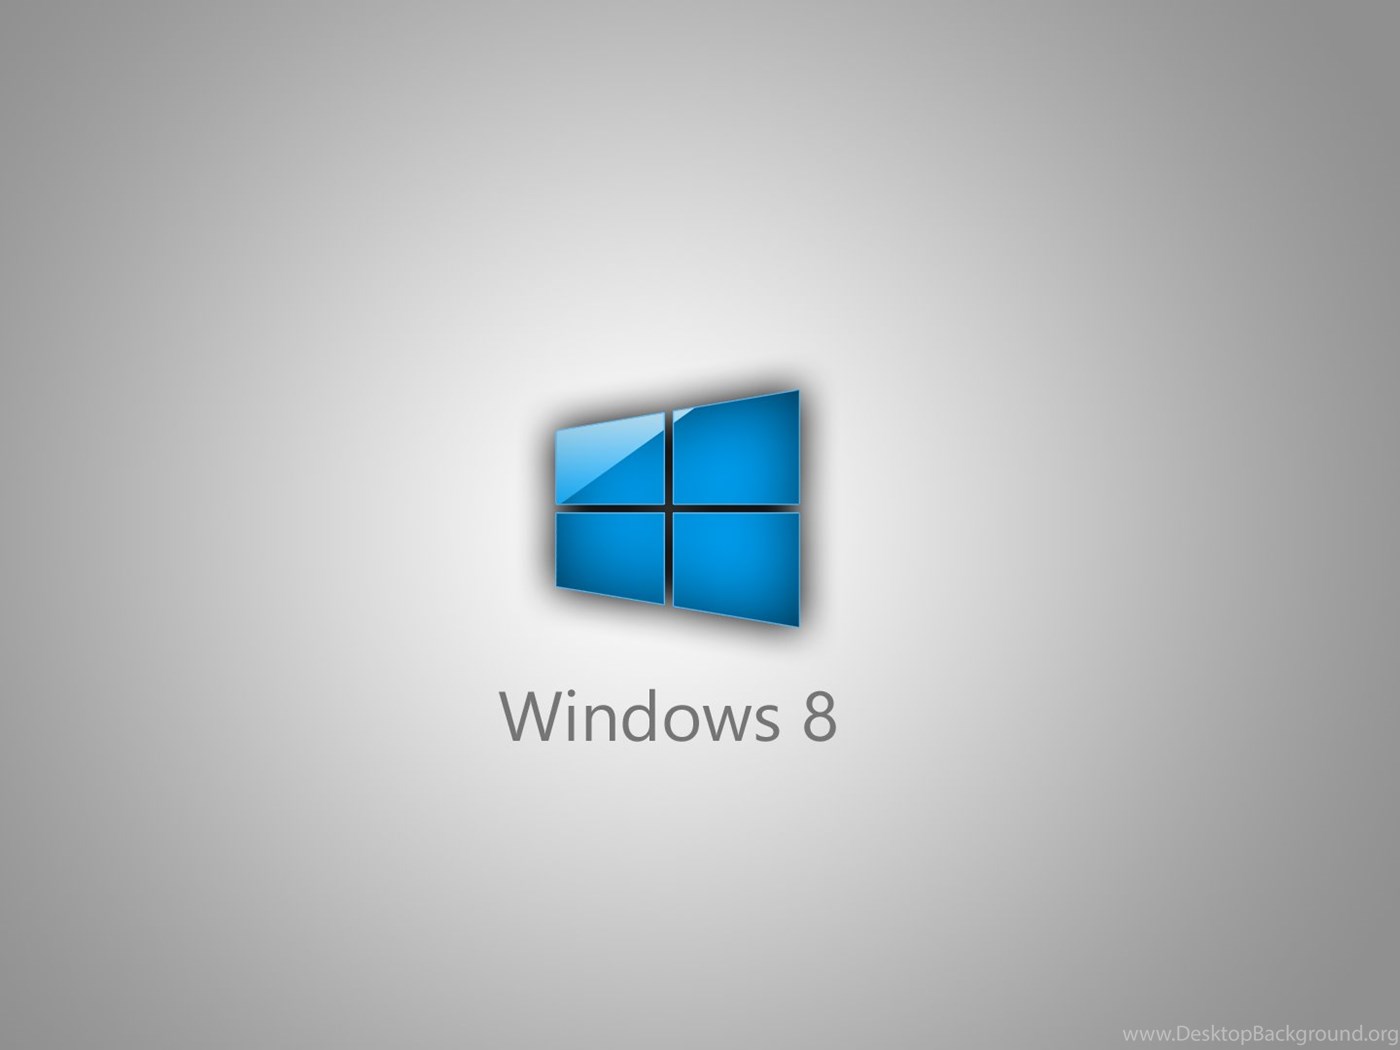 System txt. Логотип виндовс 8. Windows 8.1 логотип. Обои виндовс 8.1 на рабочий стол 1280х1024. Windows 8.1 рабочий стол.